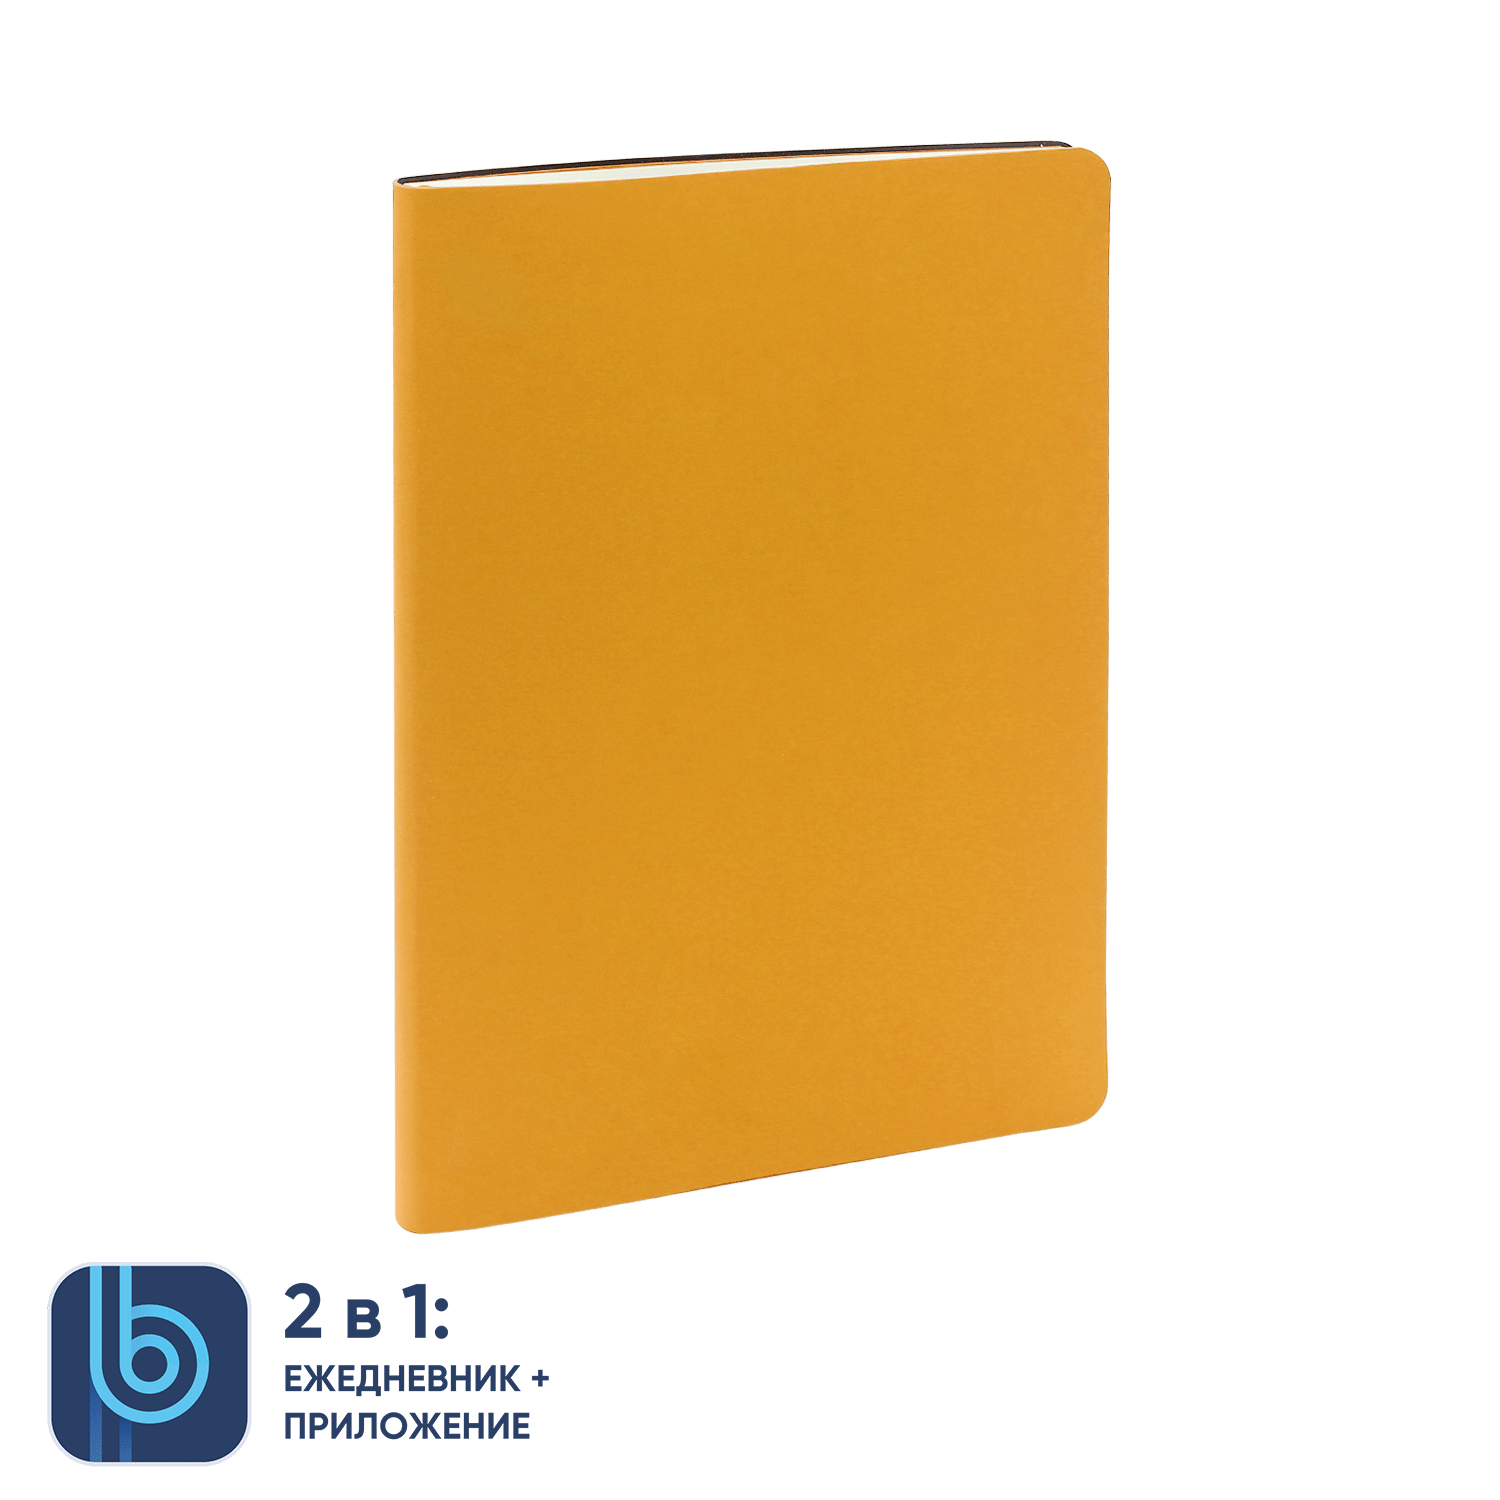 Ежедневник Bplanner.01 yellow (желтый), желтый, картон